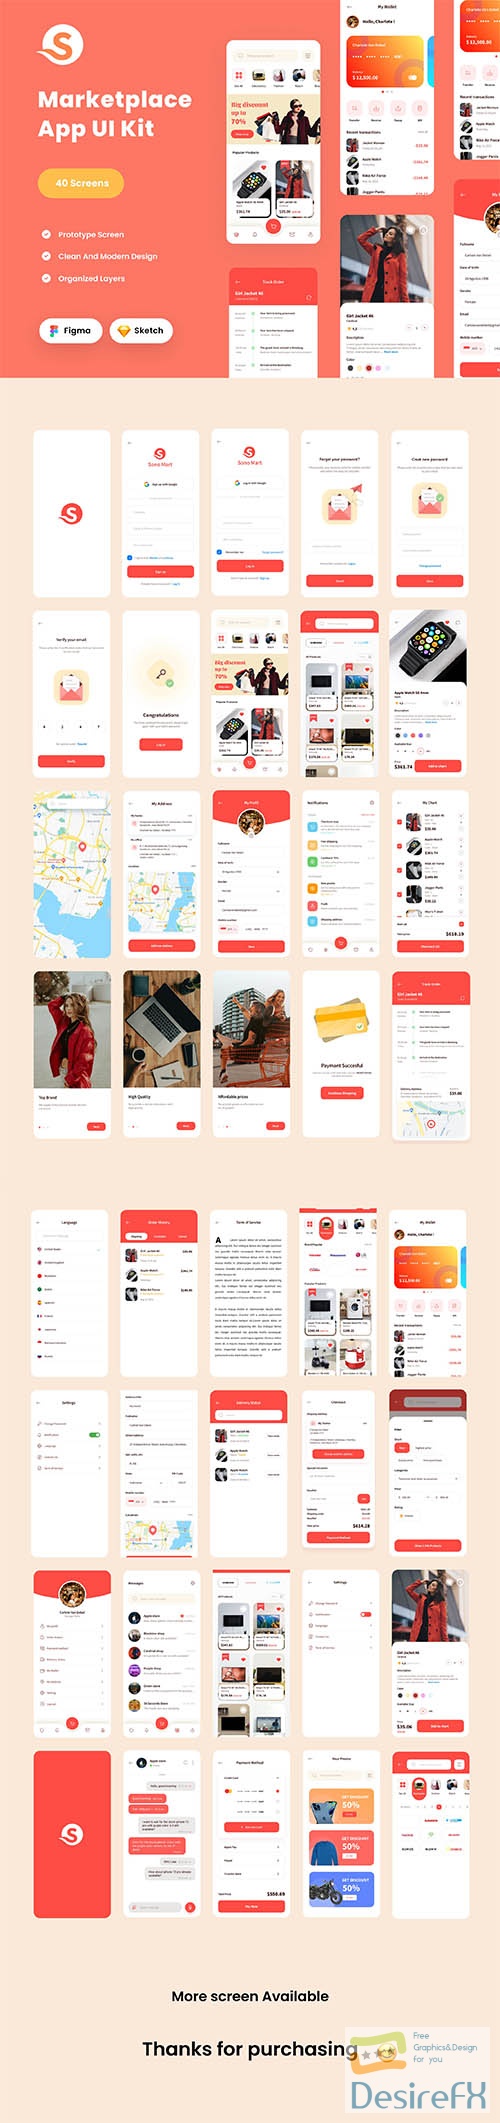 Marketplace / E-commerce UI Kit UI8